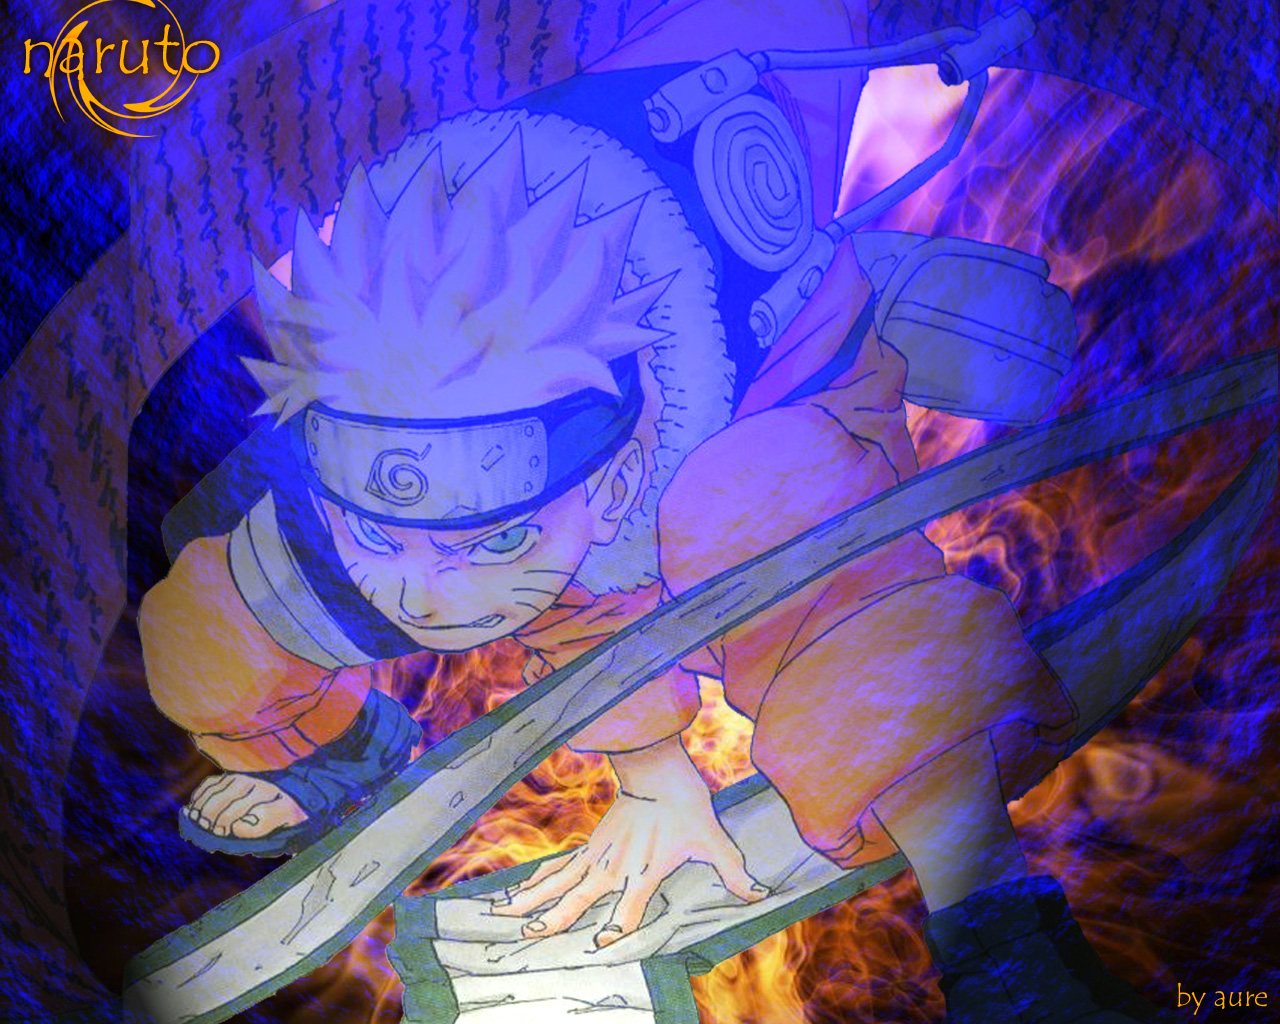 Fond d'écran gratuit de Naruto numéro 4108